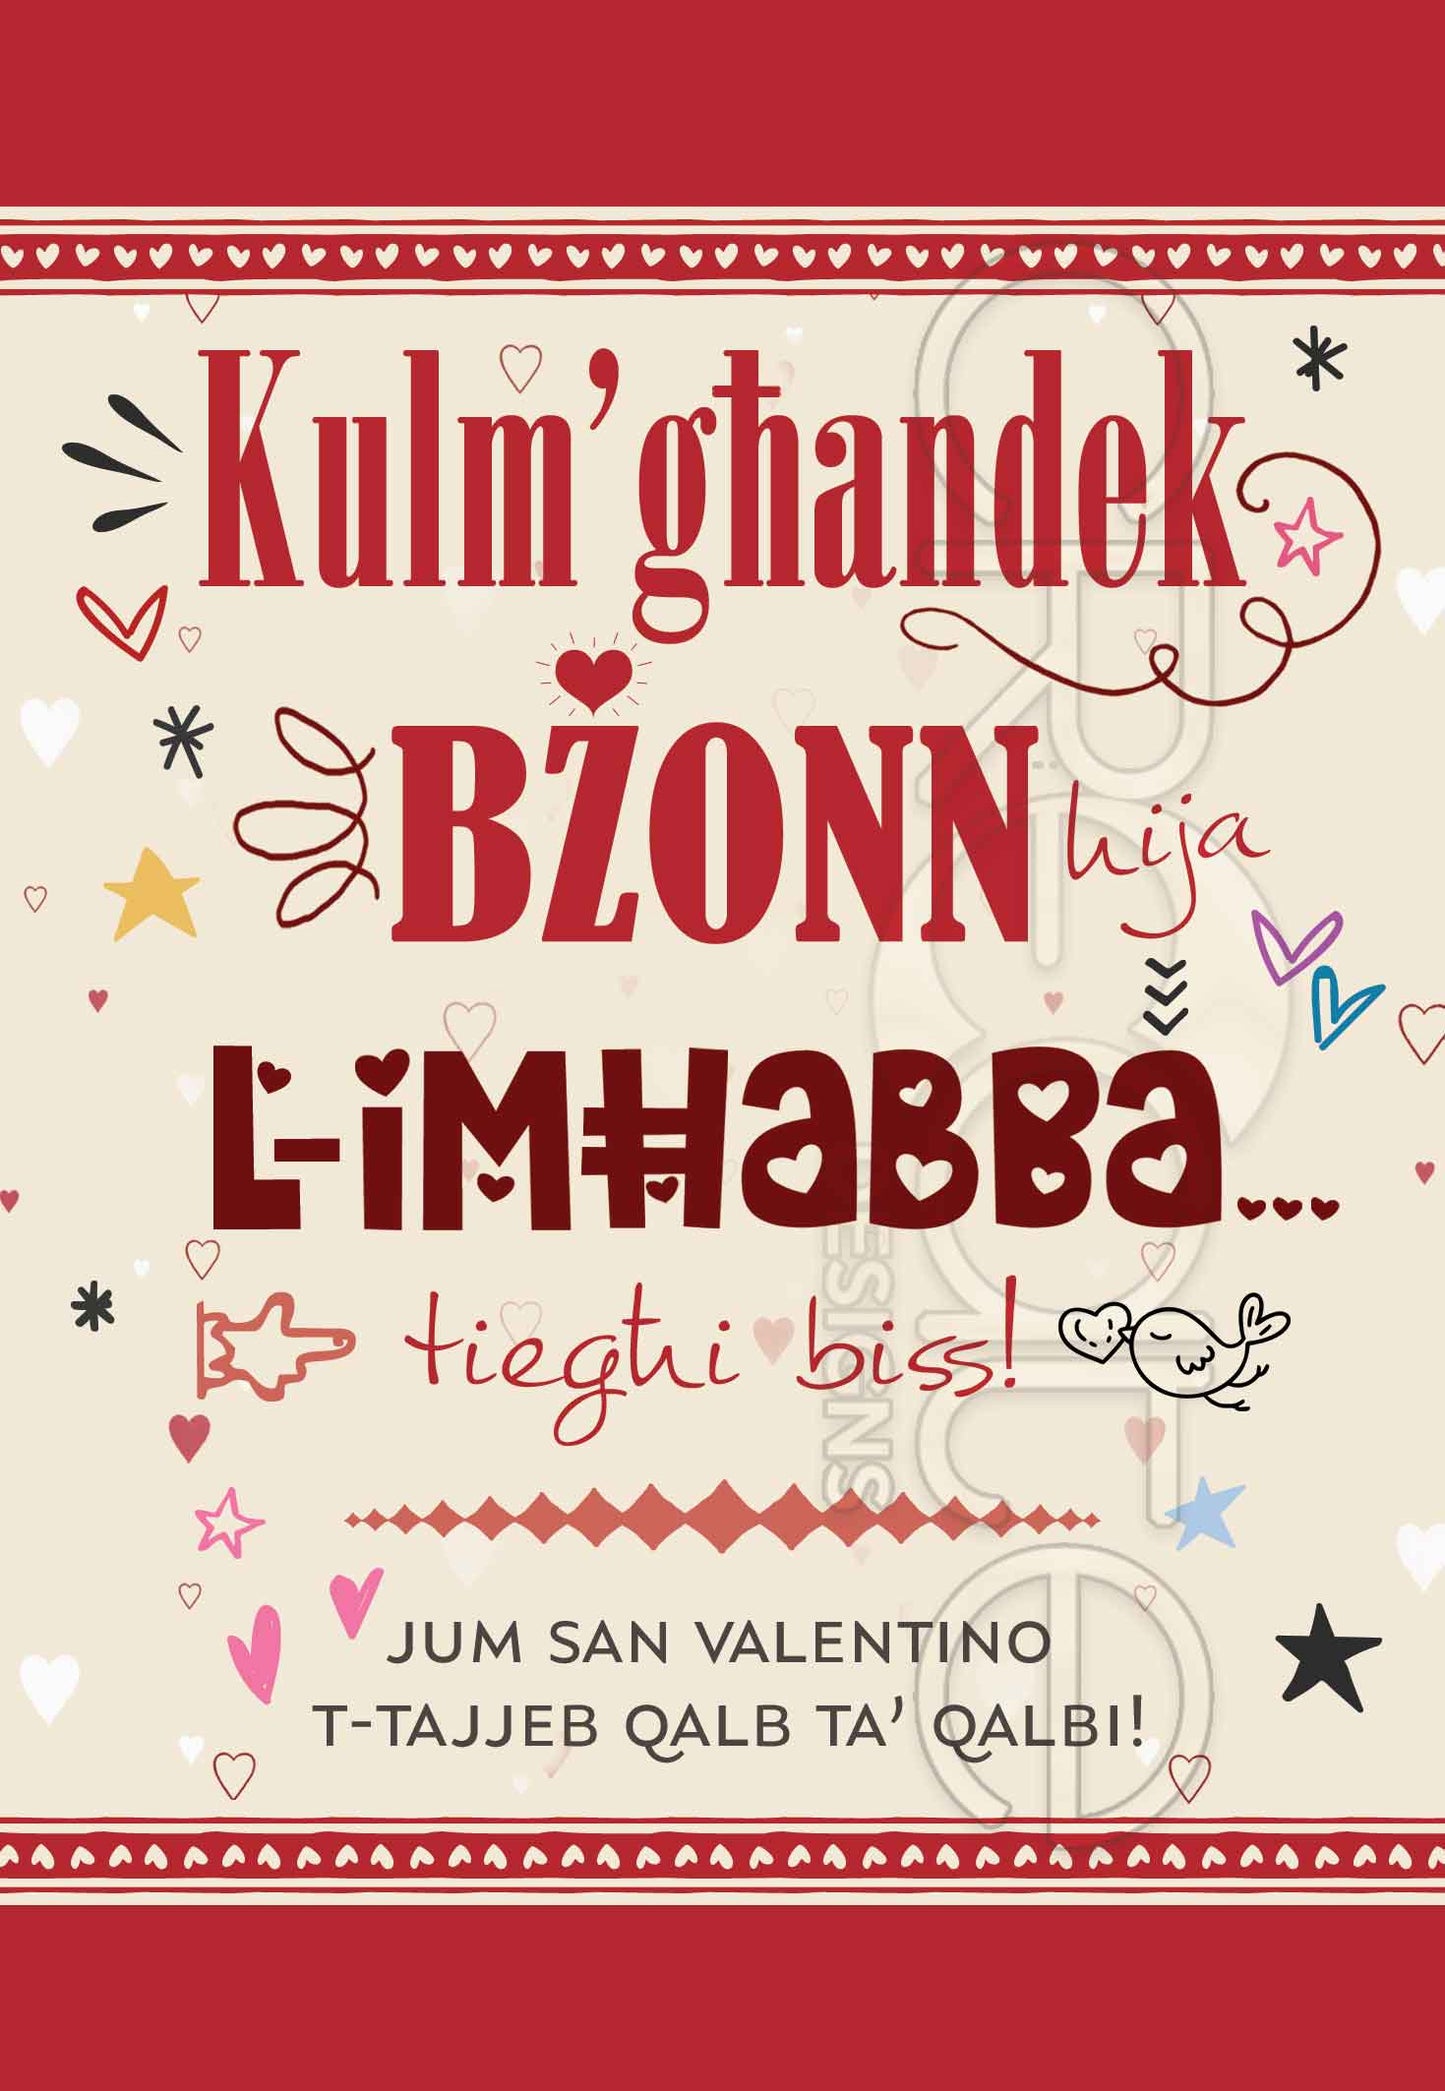 Kartolina għal San Valentino bil-kliem Kulm' għandek Bżonn